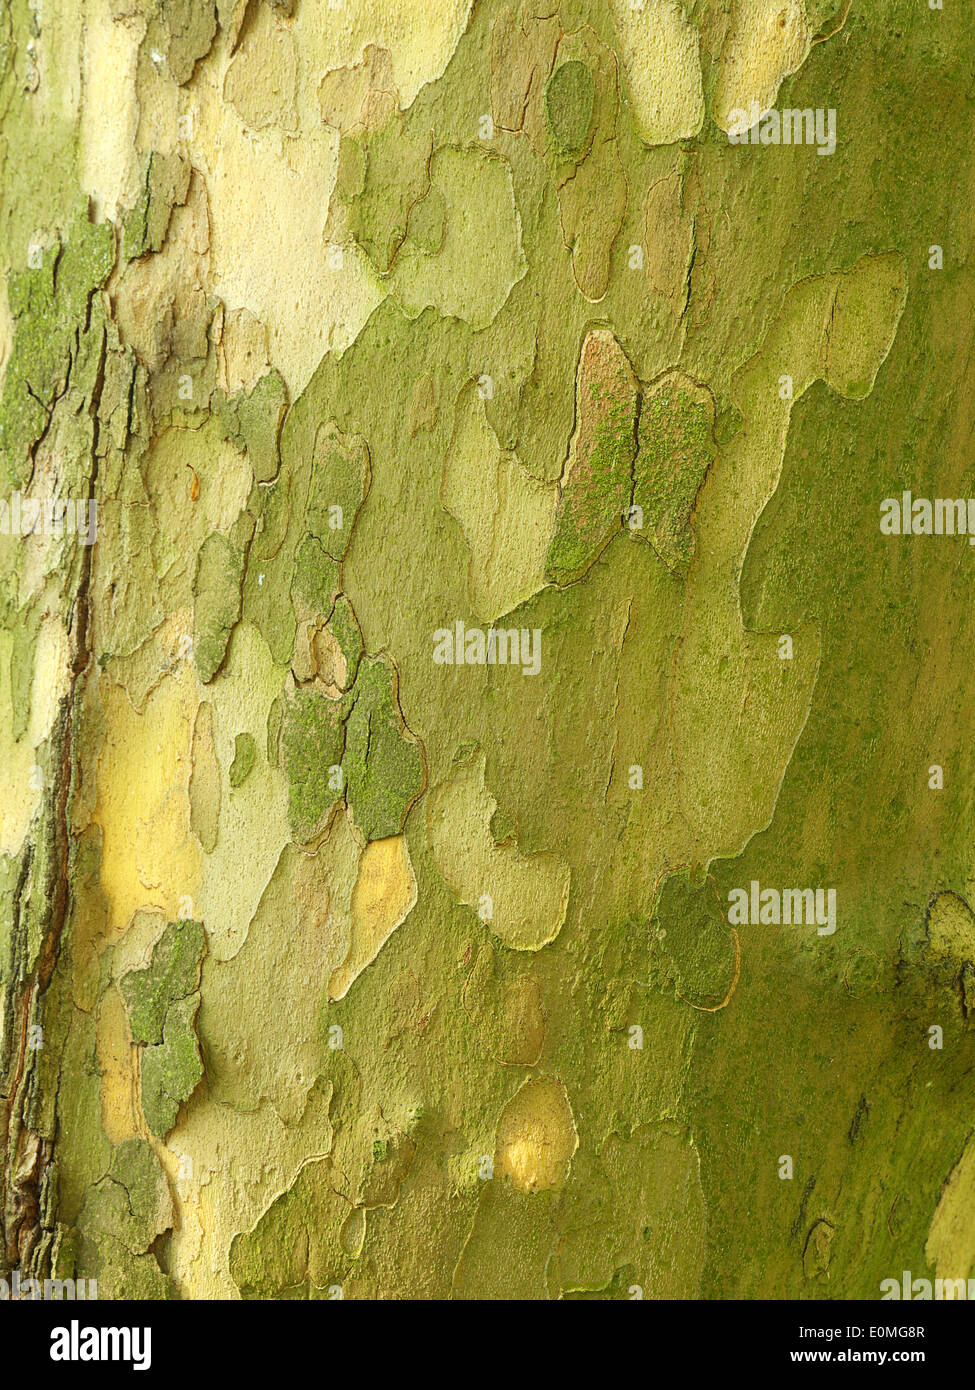 Closeup of sycamore tree trunk bark Stock Photo